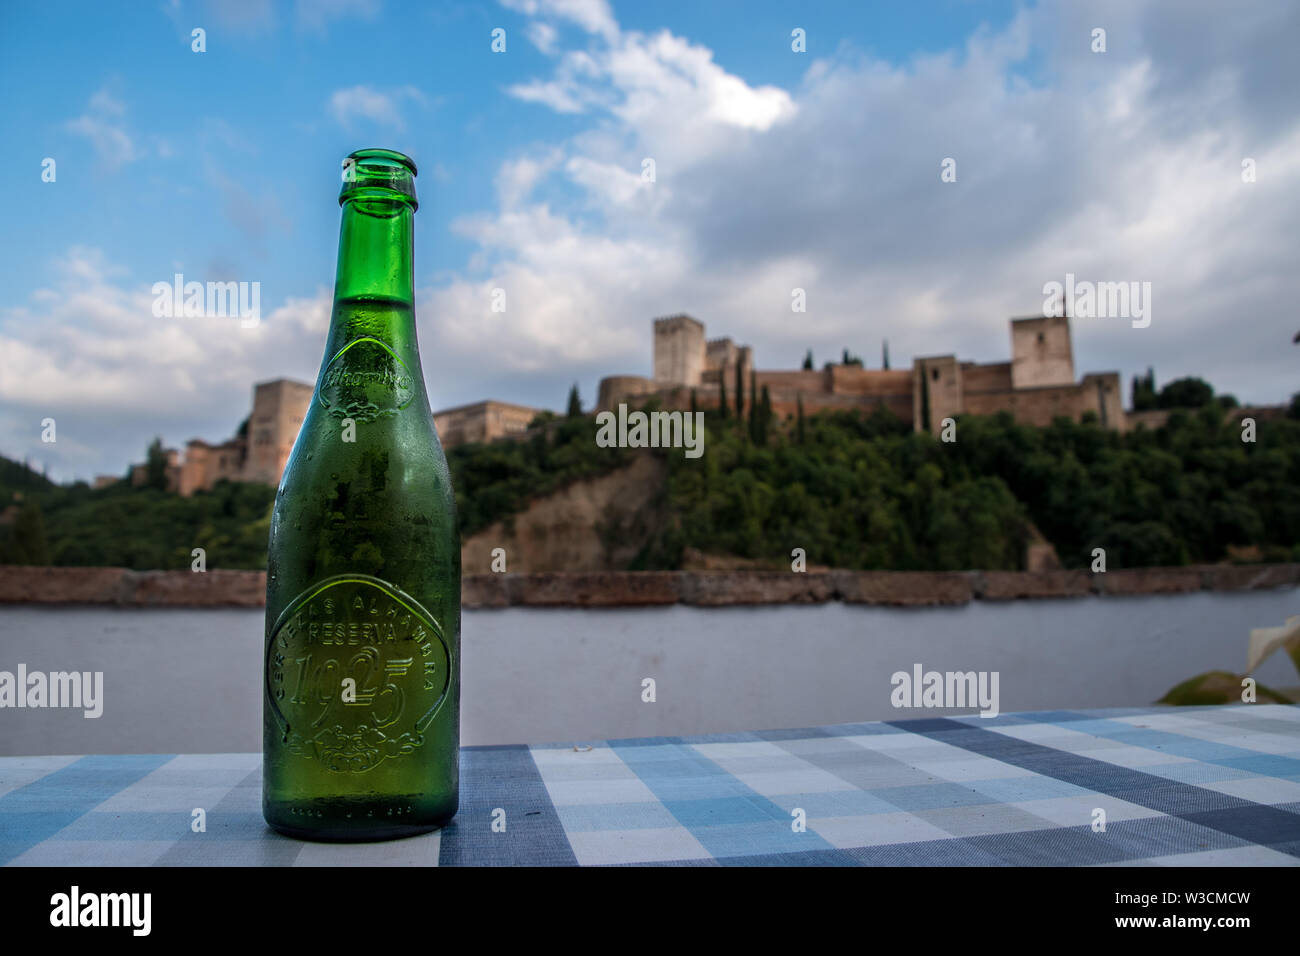 Eine Flasche Alhambra Cerveza (Bier) vor der Alhambra Burg Stockfoto